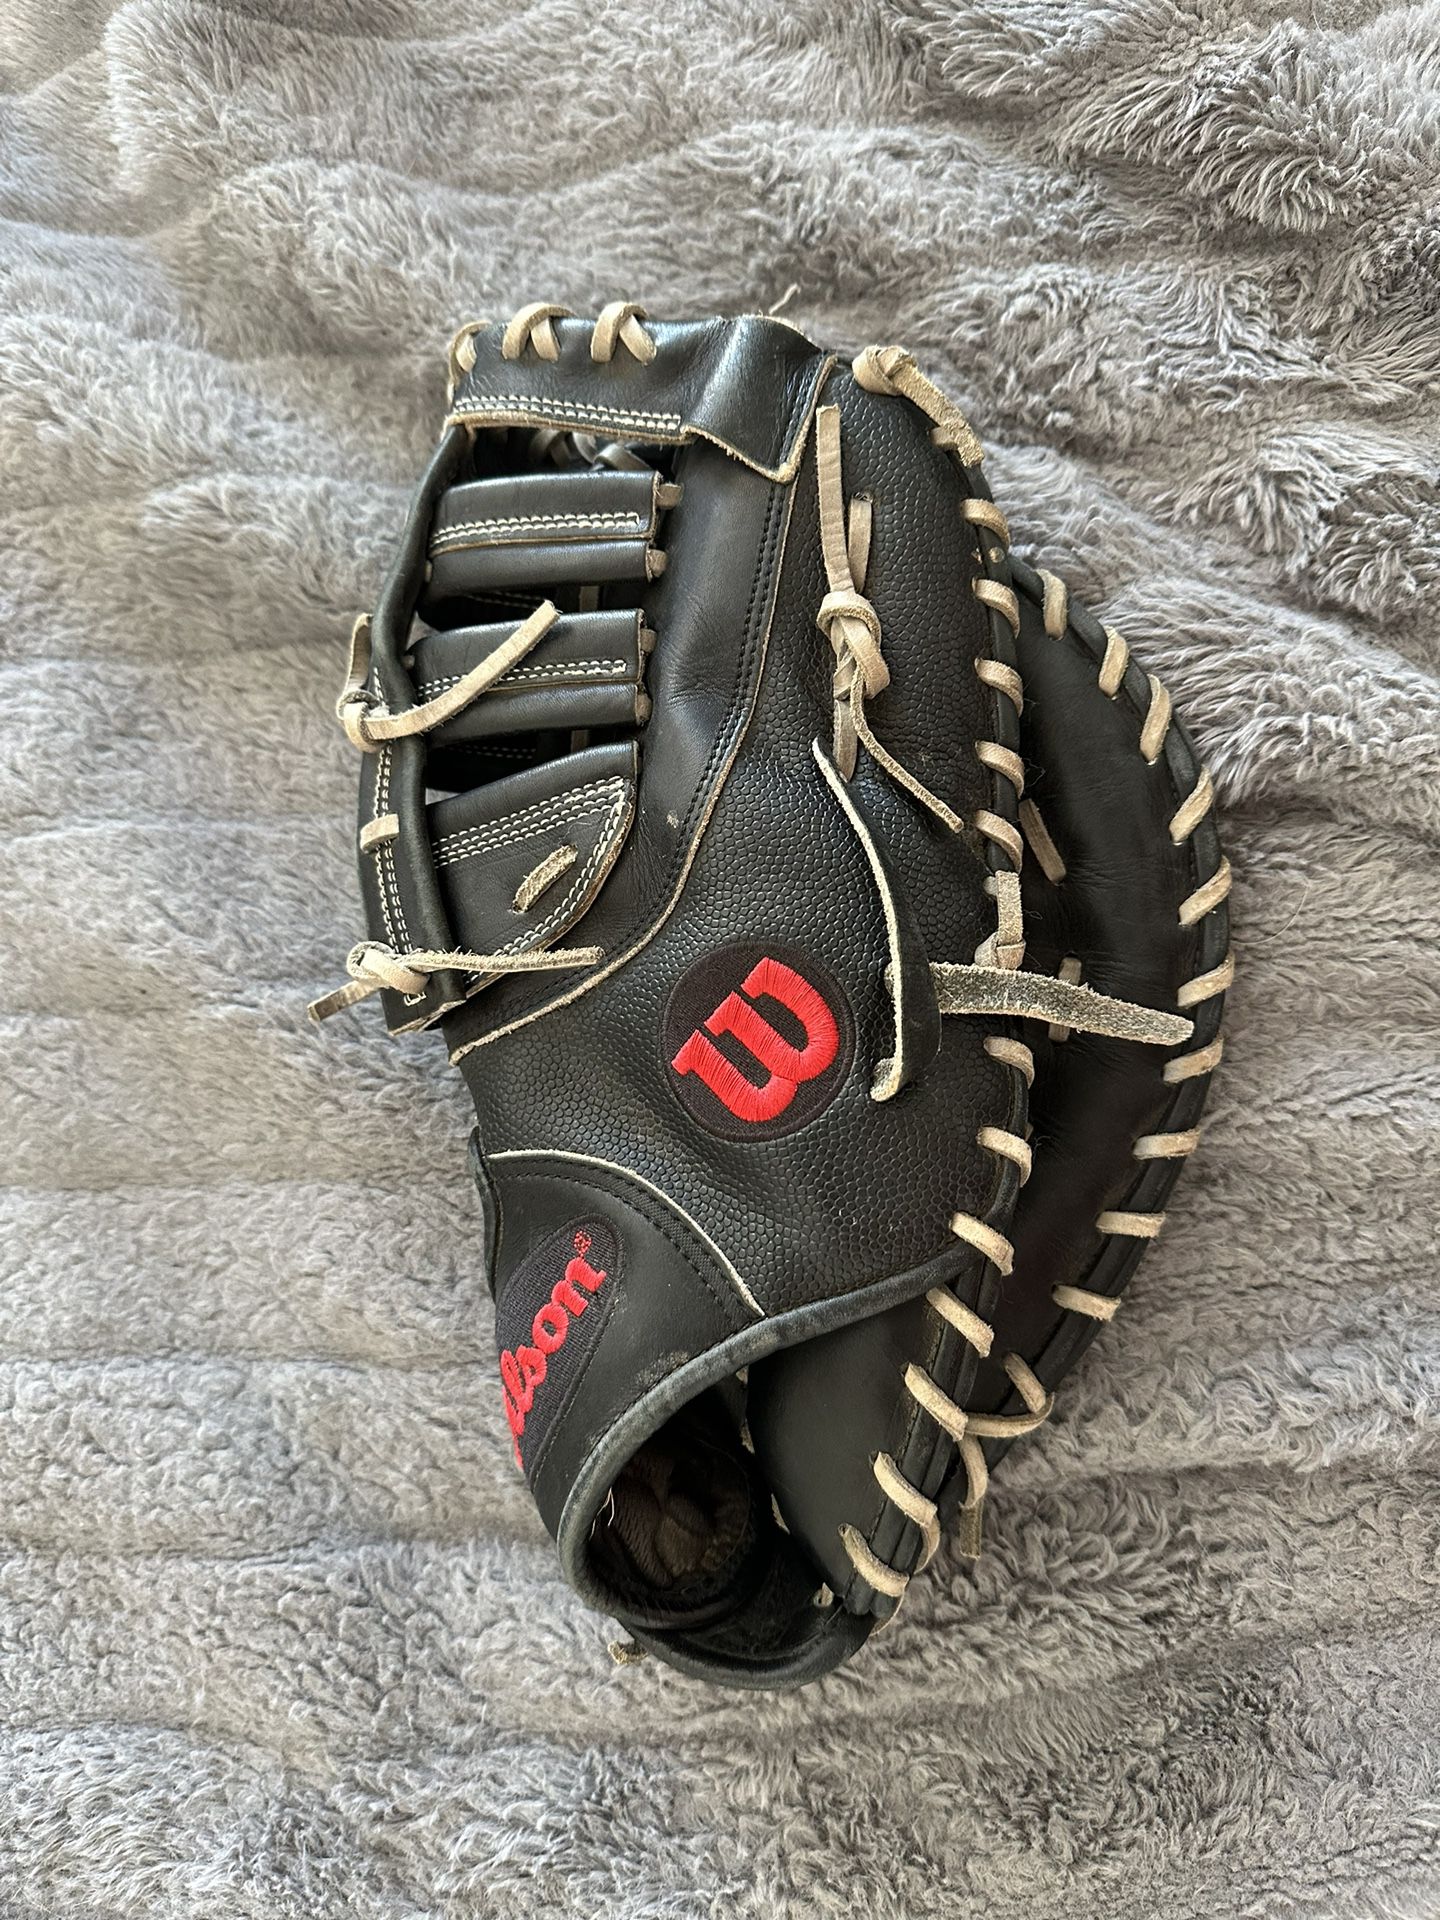 Wilson A2000 First Baseman Glove